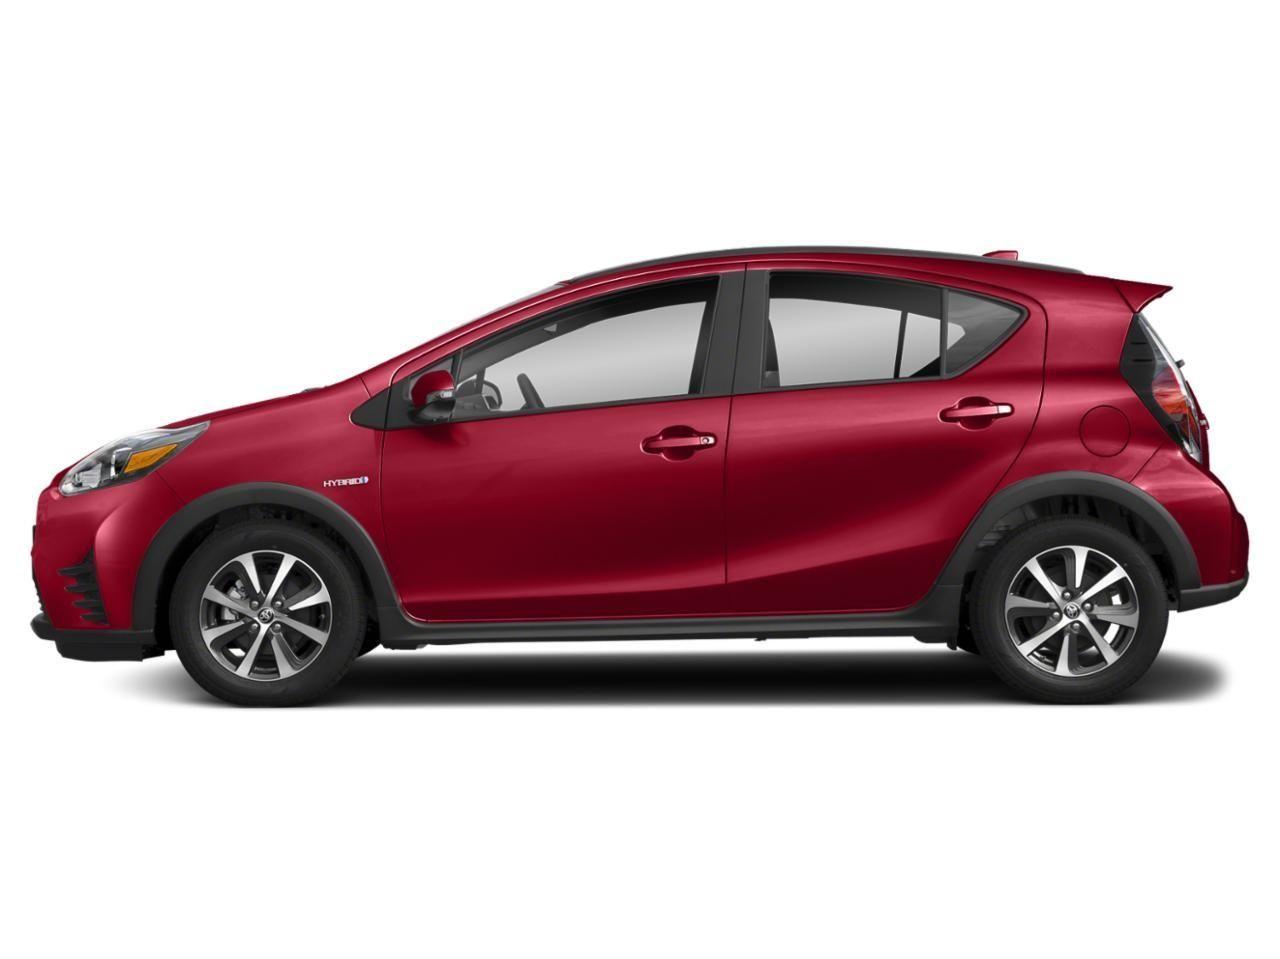 Toyota Prius C, Cost, Exterior, Interior, Release Date